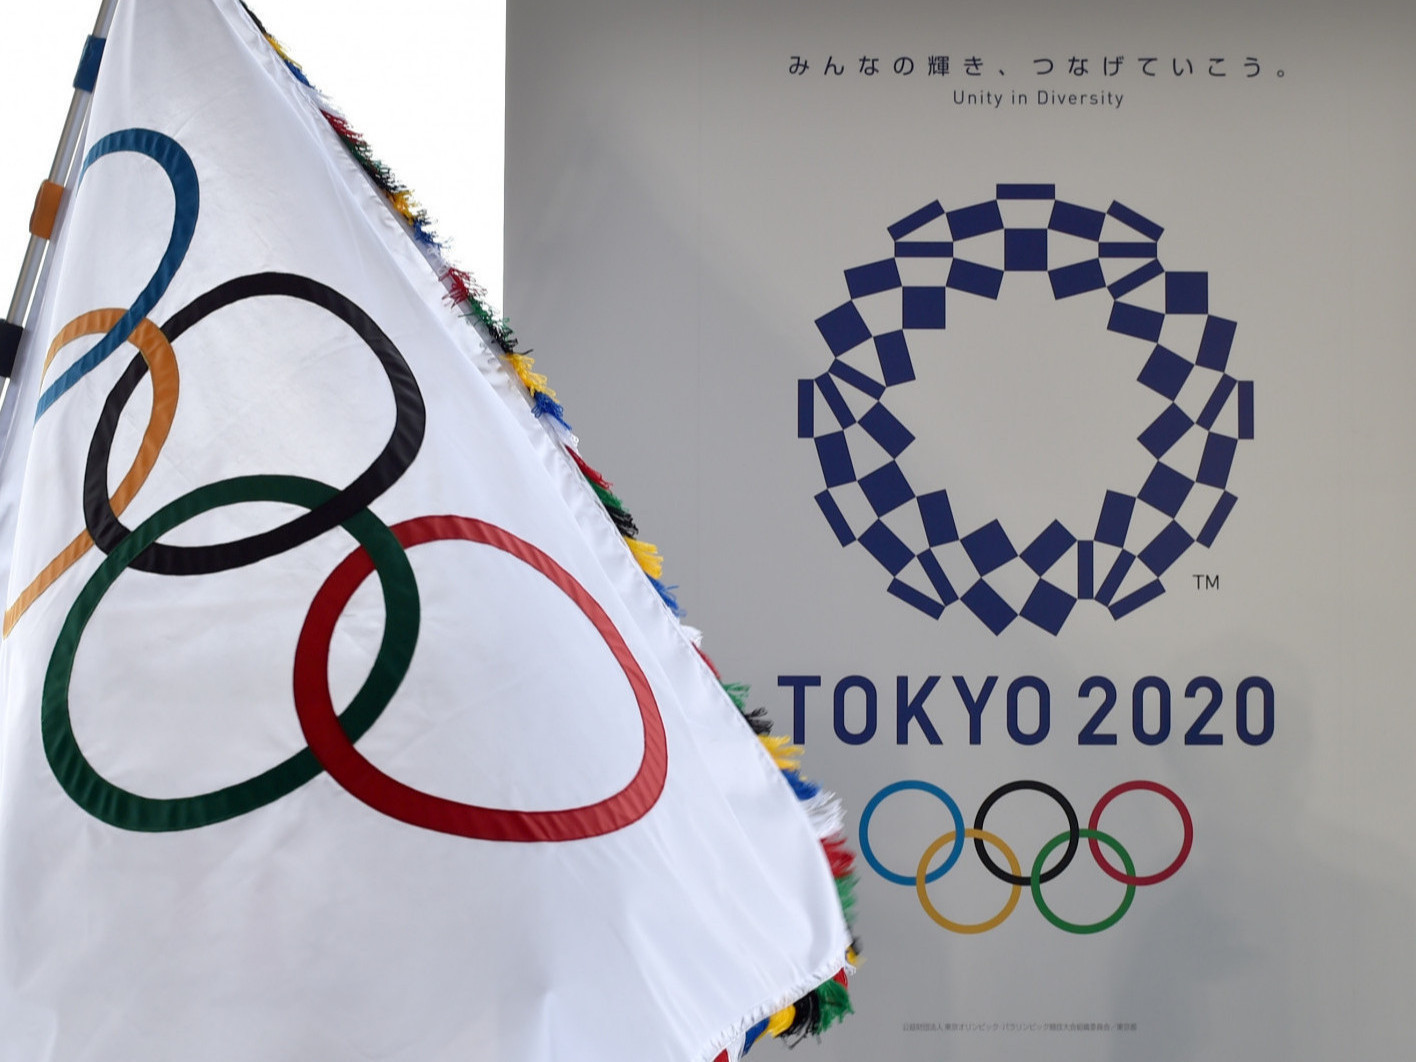 МЭДЭГДЭЛ: Олимпын наадмын лого, бэлэг тэмдгийг арилжааны зорилгоор ашиглах нь хууль бус